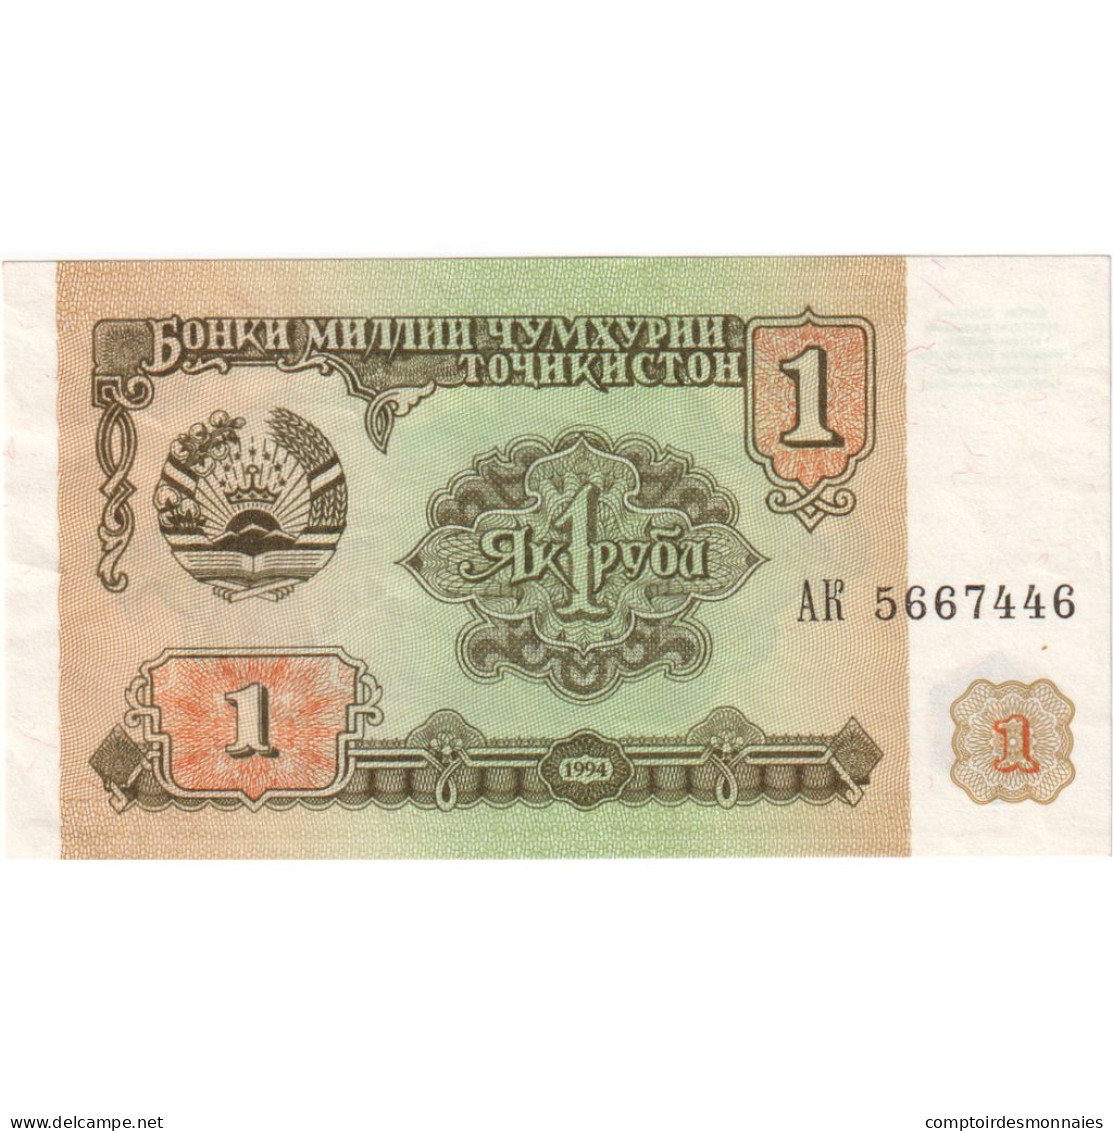 Tadjikistan, 1 Ruble, 1994, SUP - Tadschikistan